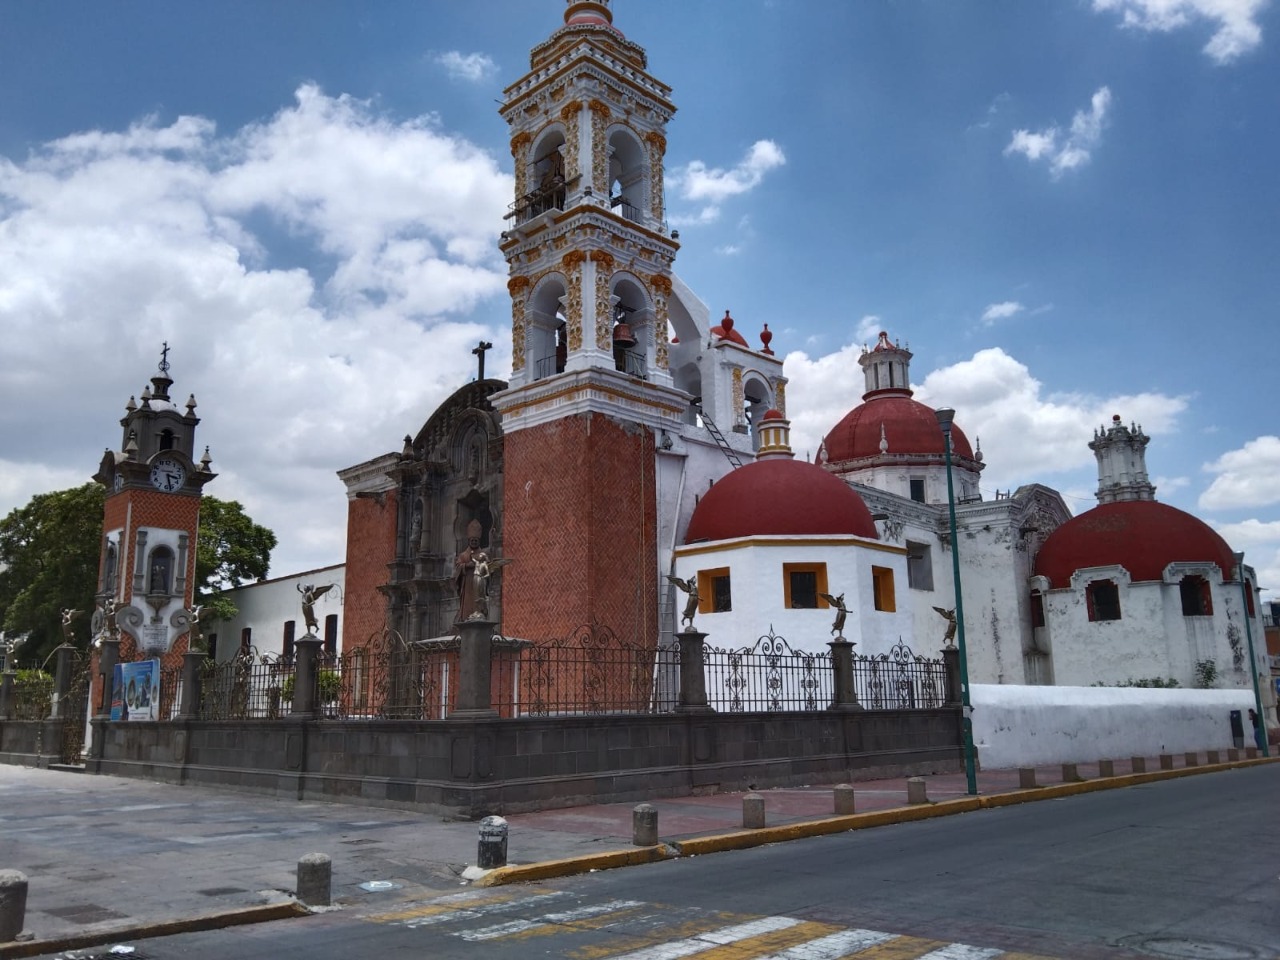 Avanza la restauración de la parroquia de Nuestra Señora de Santa Ana - ABC  TLAXCALA